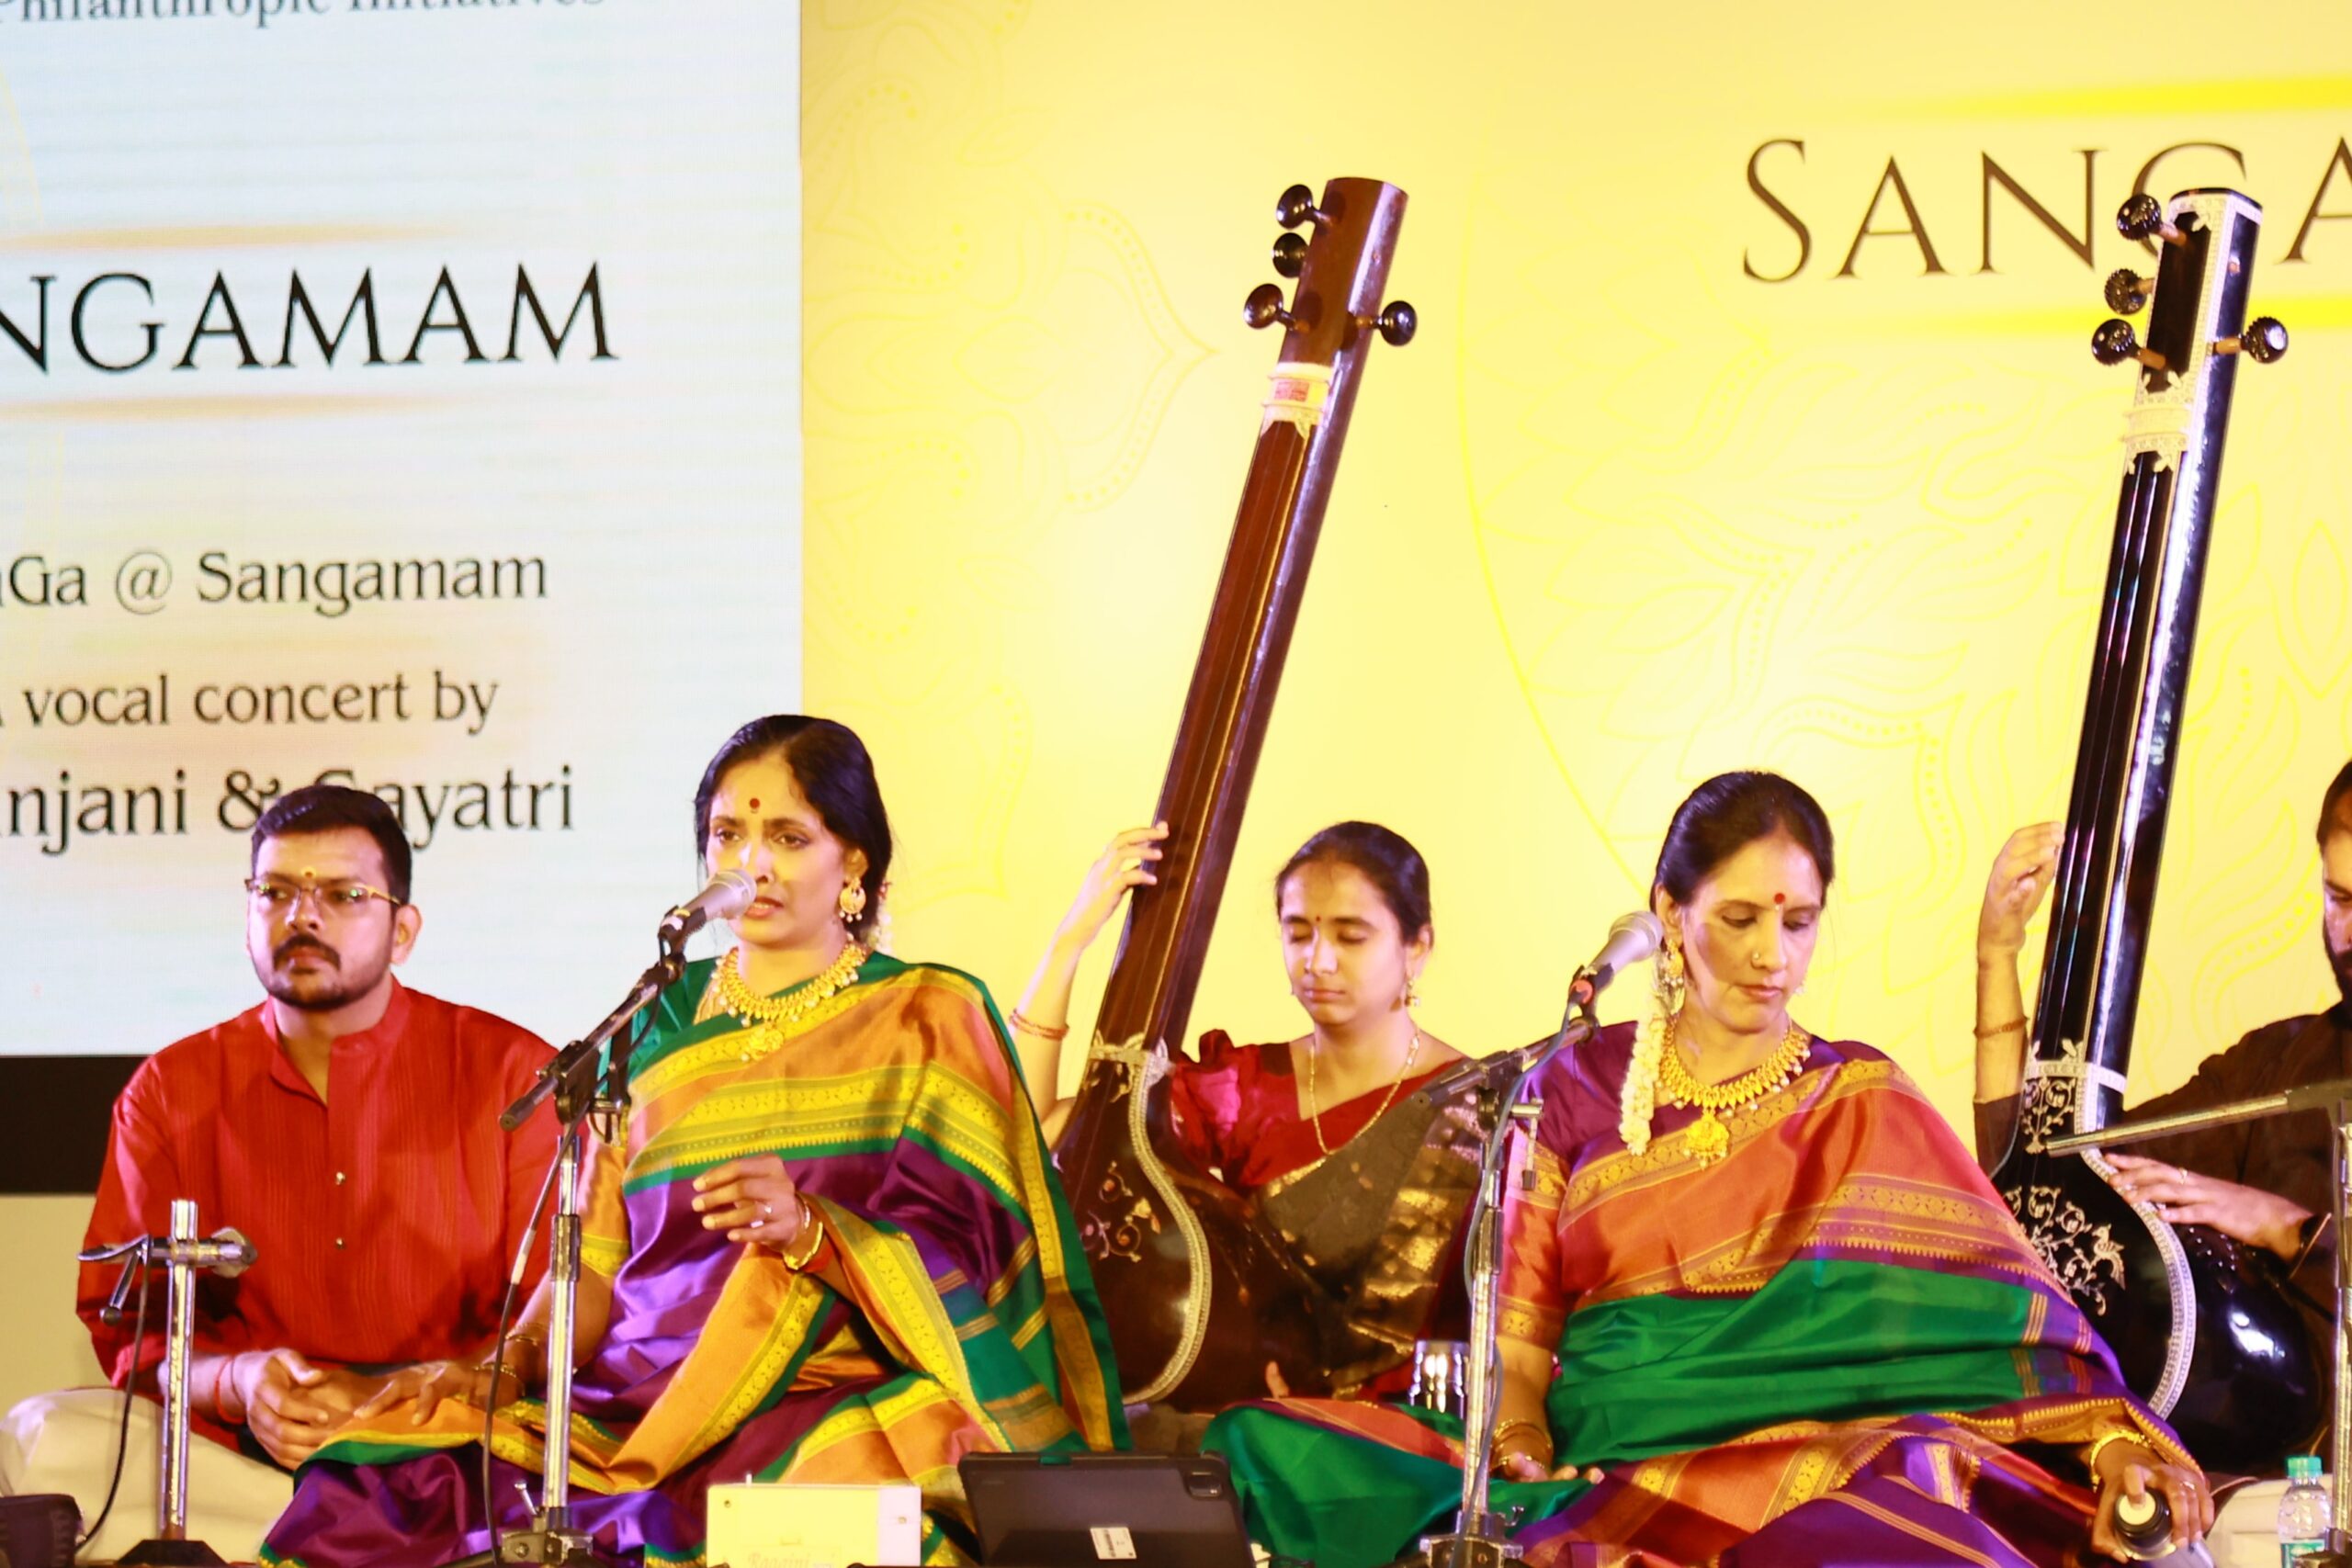 SFPI’s Sangamam Music Festival Brings Carnatic Music to All